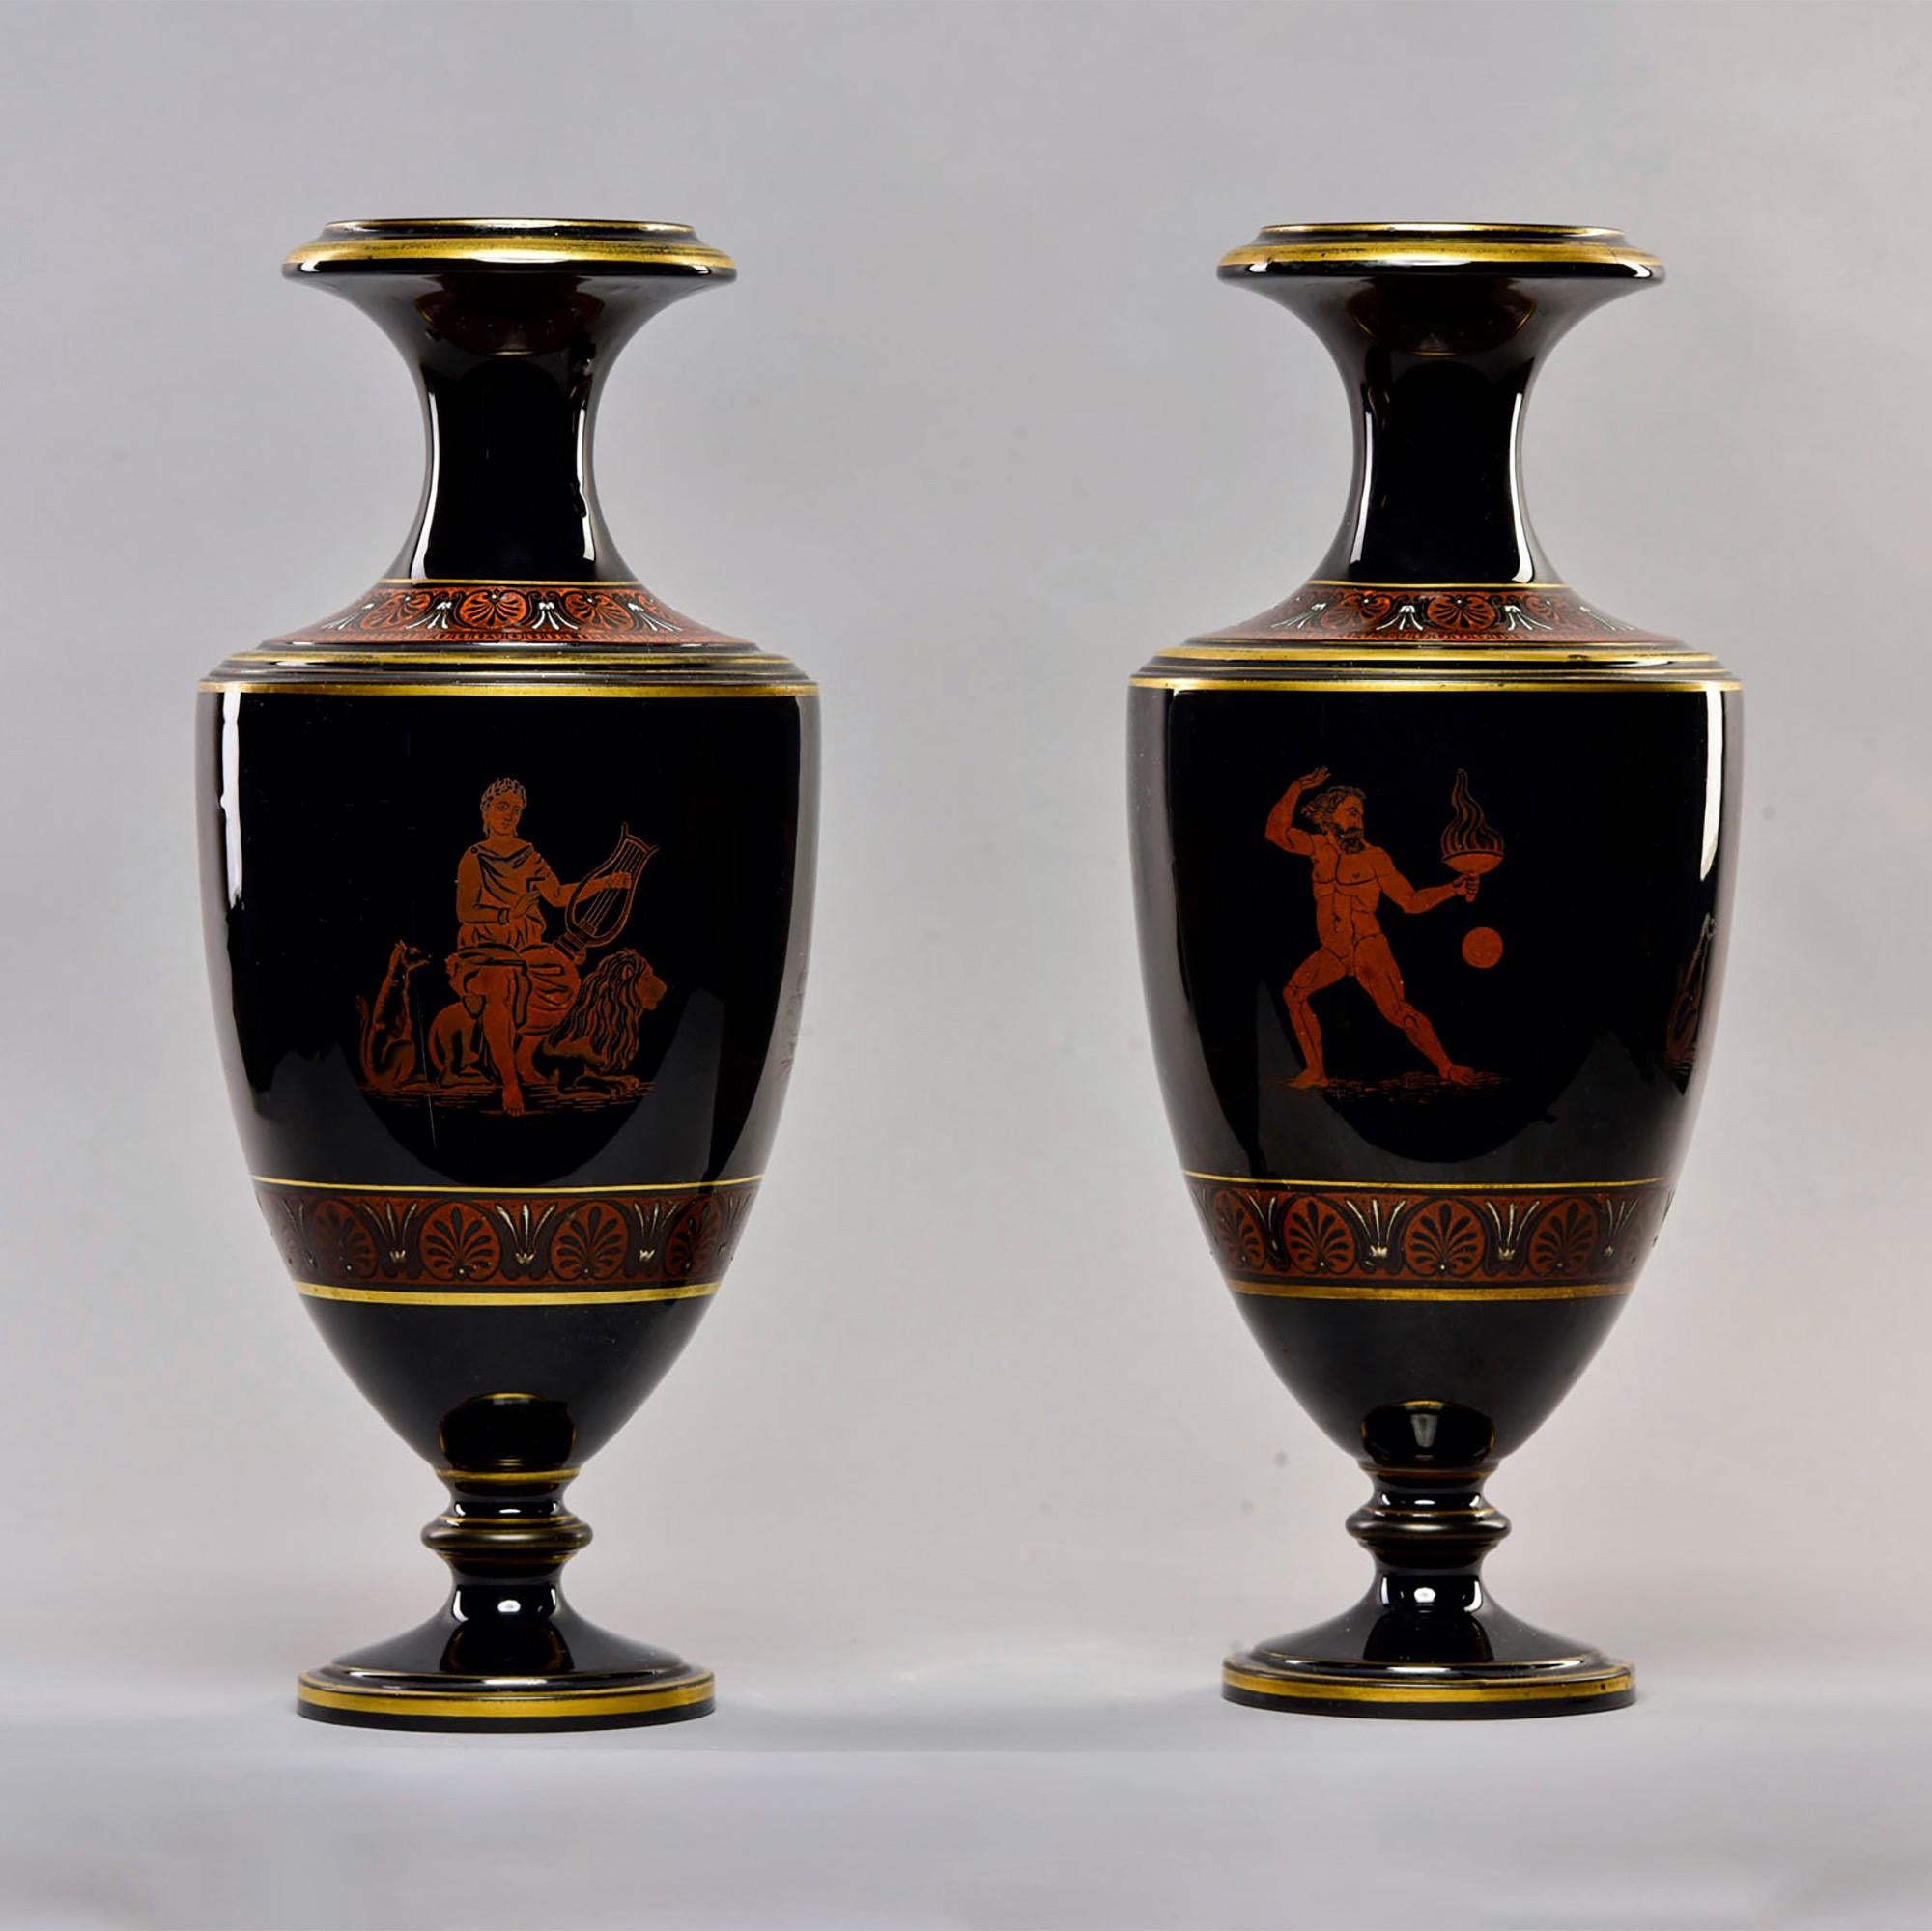 Trouvée en Angleterre, cette paire de grands vases en porcelaine noire date des années 1880 environ. Décoré de dorures et de figures classiques grecques ou romaines. Fabricant inconnu. Très bon état ancien. Vendu et tarifé comme une paire.